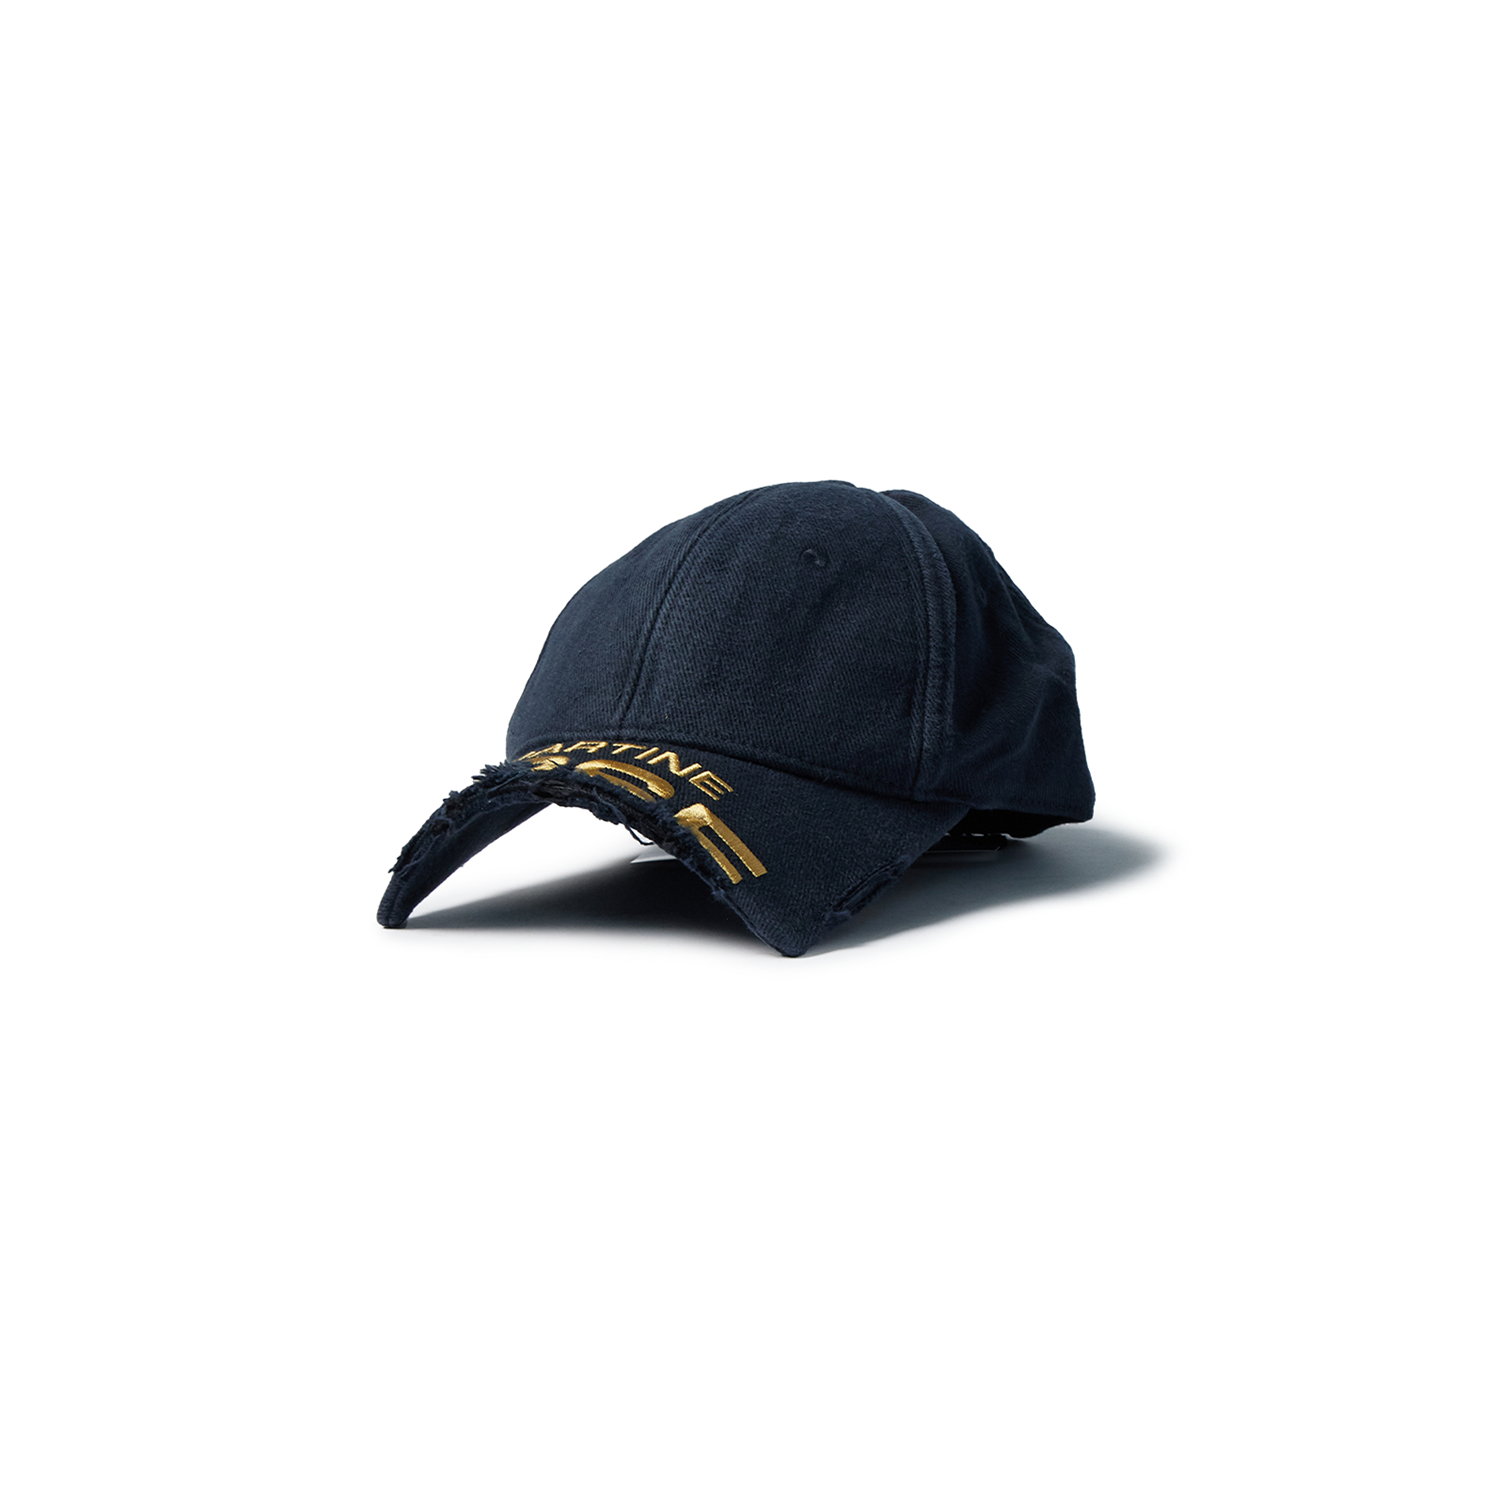 MARTINE ROSE - Cut Peak Cap (Navy) product image